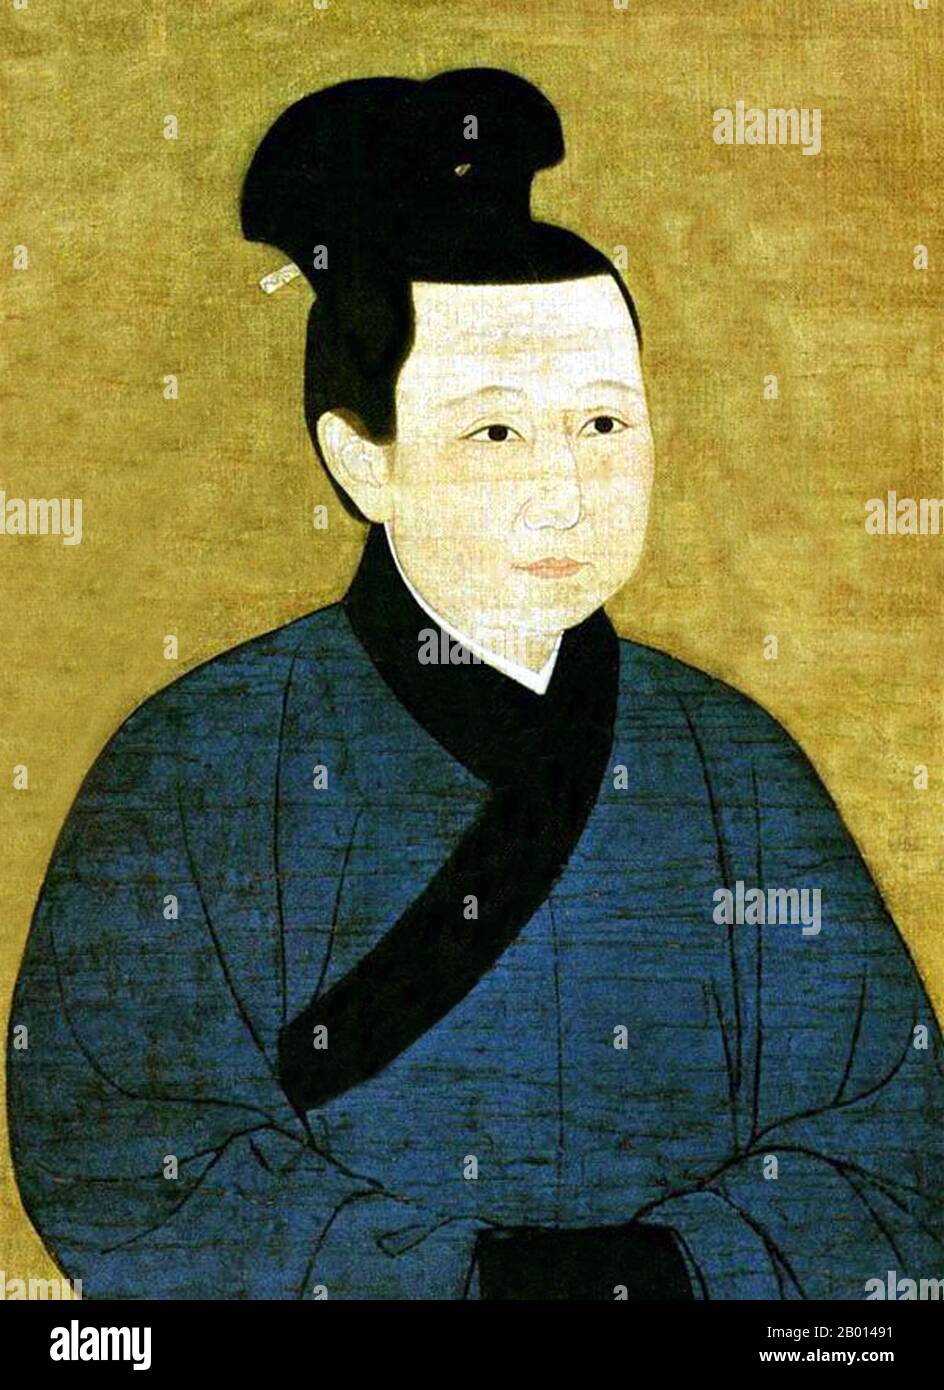 Cina: Imperatrice Meng (1073-1131), consorte dell'Imperatore Zhezong, settimo sovrano della Dinastia Song (r.1058-1100). Pittura a spirale appesa, dinastia Song (960-1279). L'imperatrice Meng, conosciuta anche come Zhaoche e Yuanyou, fu la consorte dell'imperatore Zhezong. Non si sono accadeva, perché Meng è stato scelto per l'imperatore dall'imperatrice Dowager Regent Gao. Fu accusata falsamente di stregoneria, spogliata del suo titolo e inviata ad un convento Daoista. Ciò la ha risparmiata dall'incidente di Jingkang, quando il Jurchen ha catturato l'intera famiglia reale ed è stata nominata reggente della dinastia dei burattini del Jurchen da Chu Foto Stock